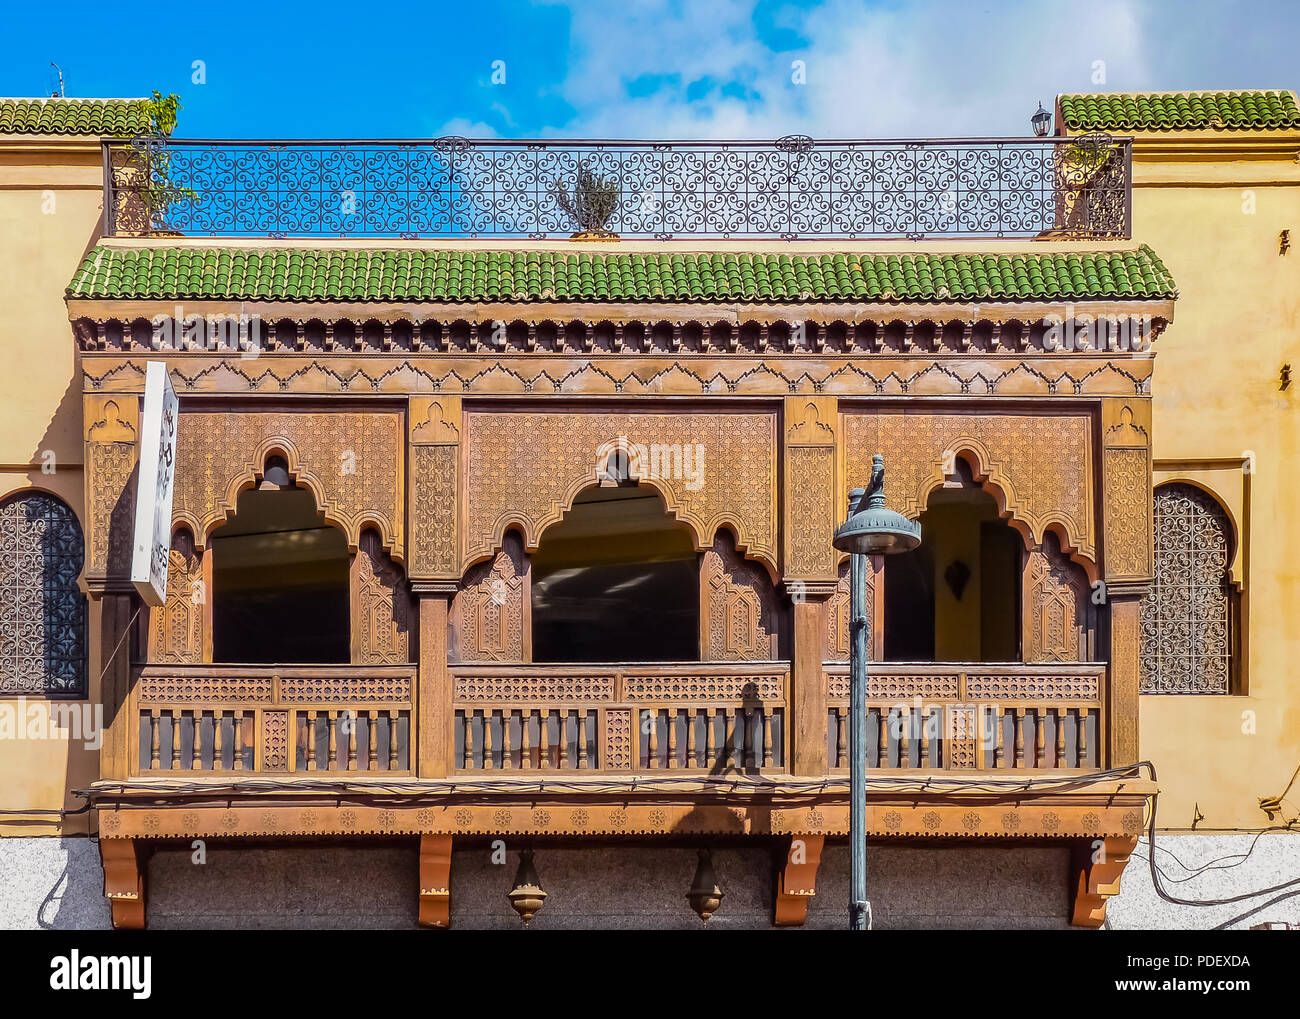 Bois sculpté orné de ferronnerie et balcon sur la façade d'un riad marocain à Marrakech, Maroc Banque D'Images